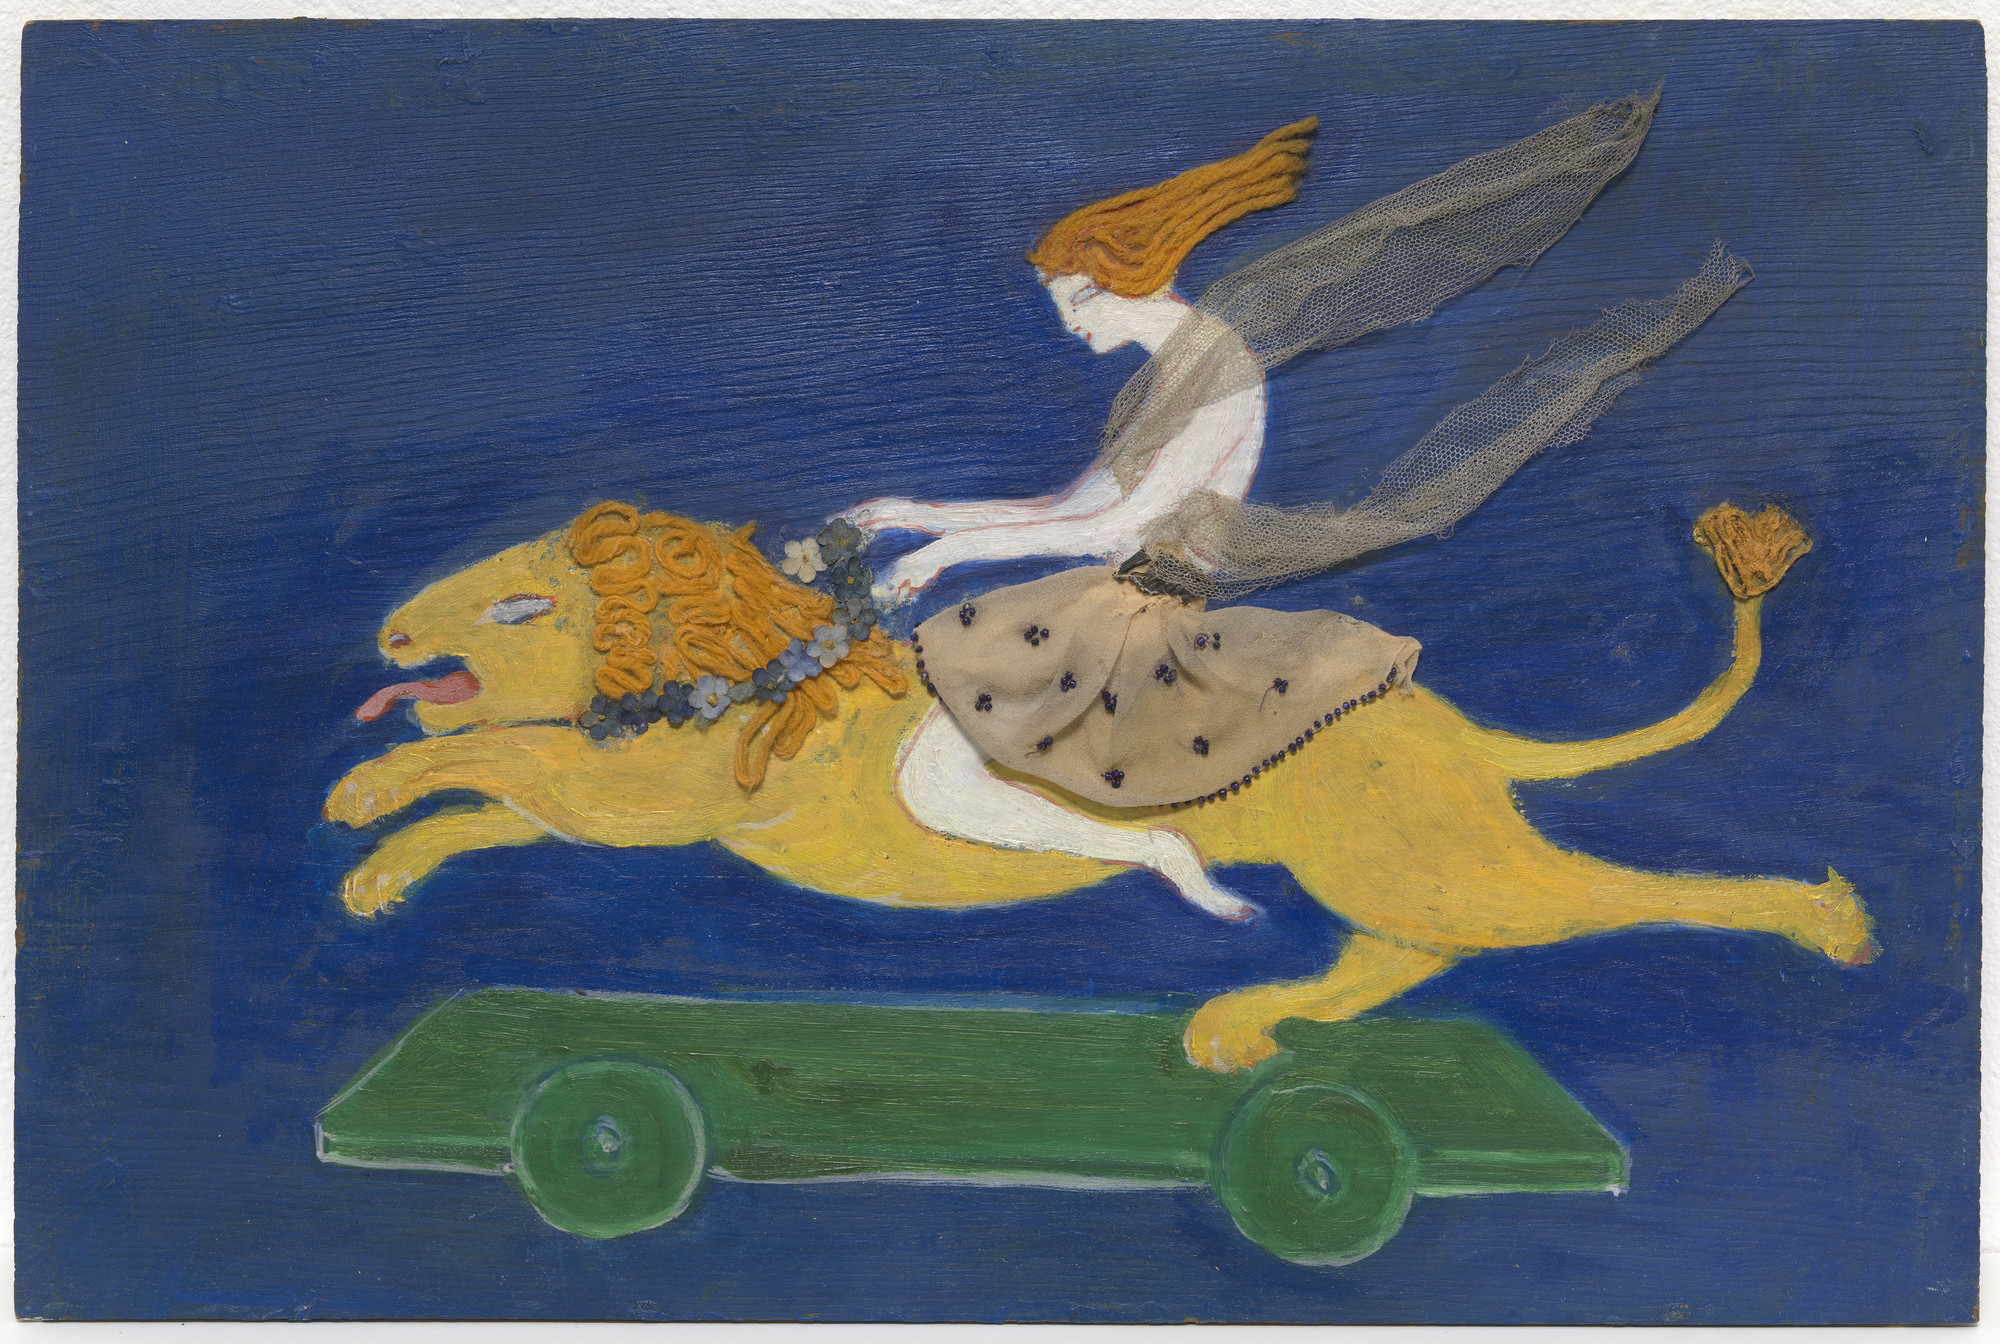 Design de Guarda-Roupa (Andrócles e o Leão) by Florine Stettheimer - c. 1912 - 30,2 x 45,4 cm Museum of Modern Art